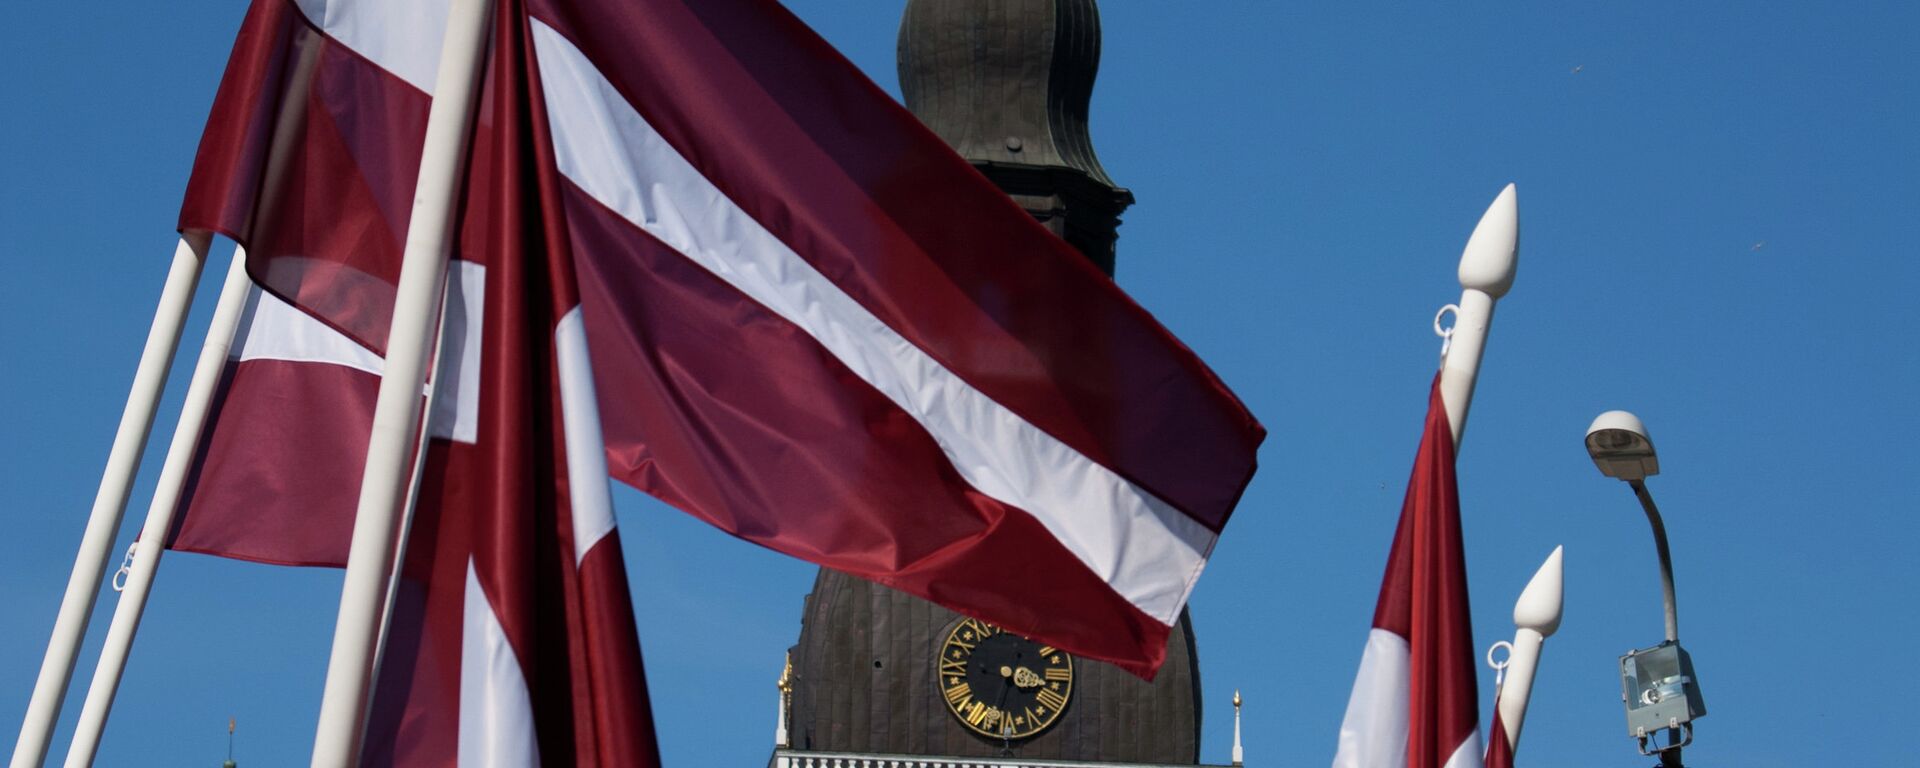 Bandera de Letonia - Sputnik Mundo, 1920, 23.04.2021